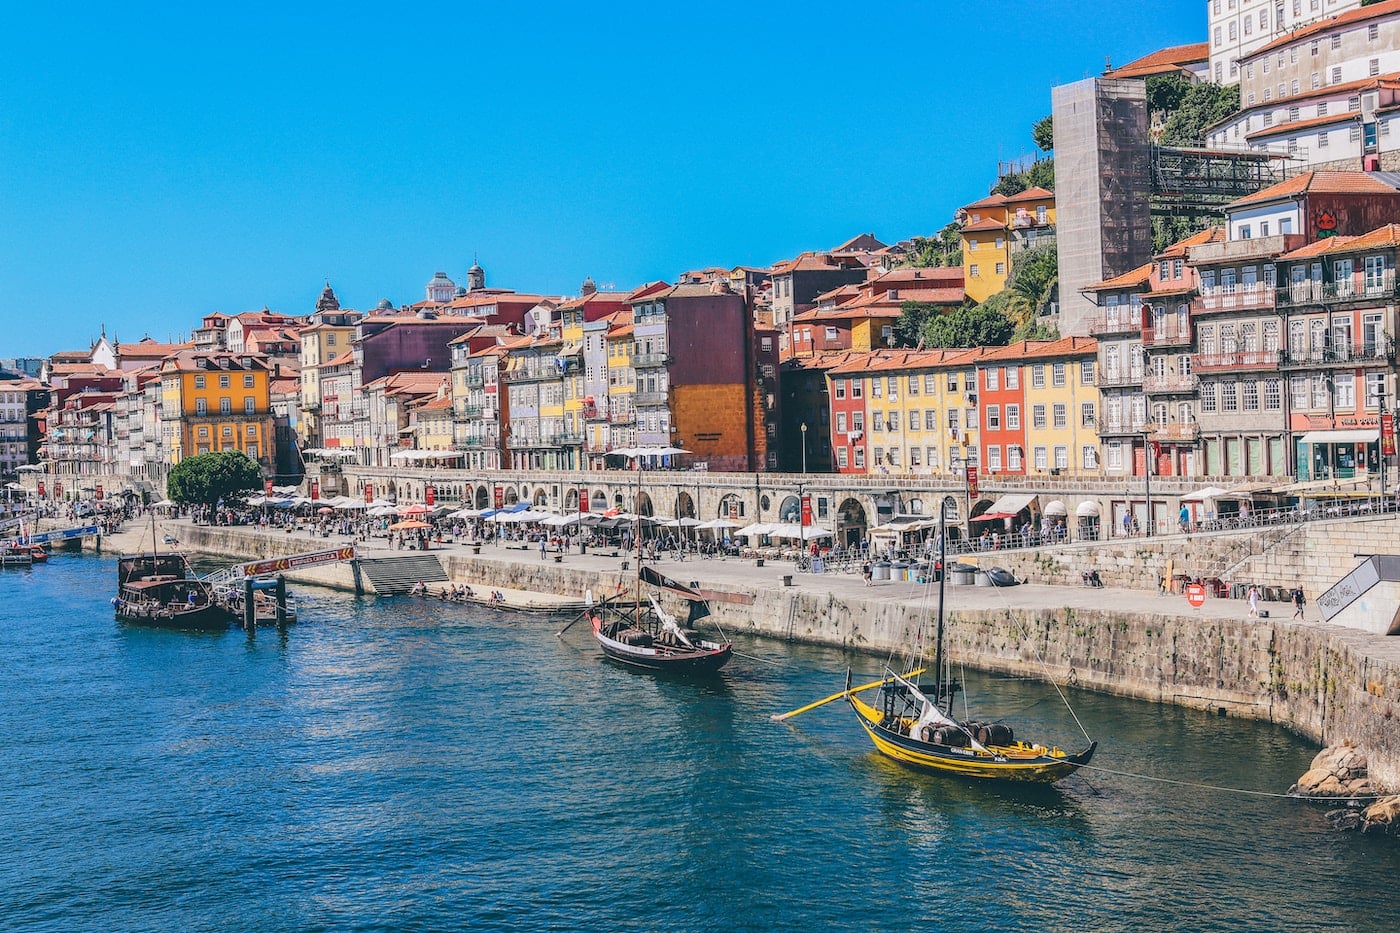 Goedkope stedentrip in Europa: bezoek Porto in Portugal!